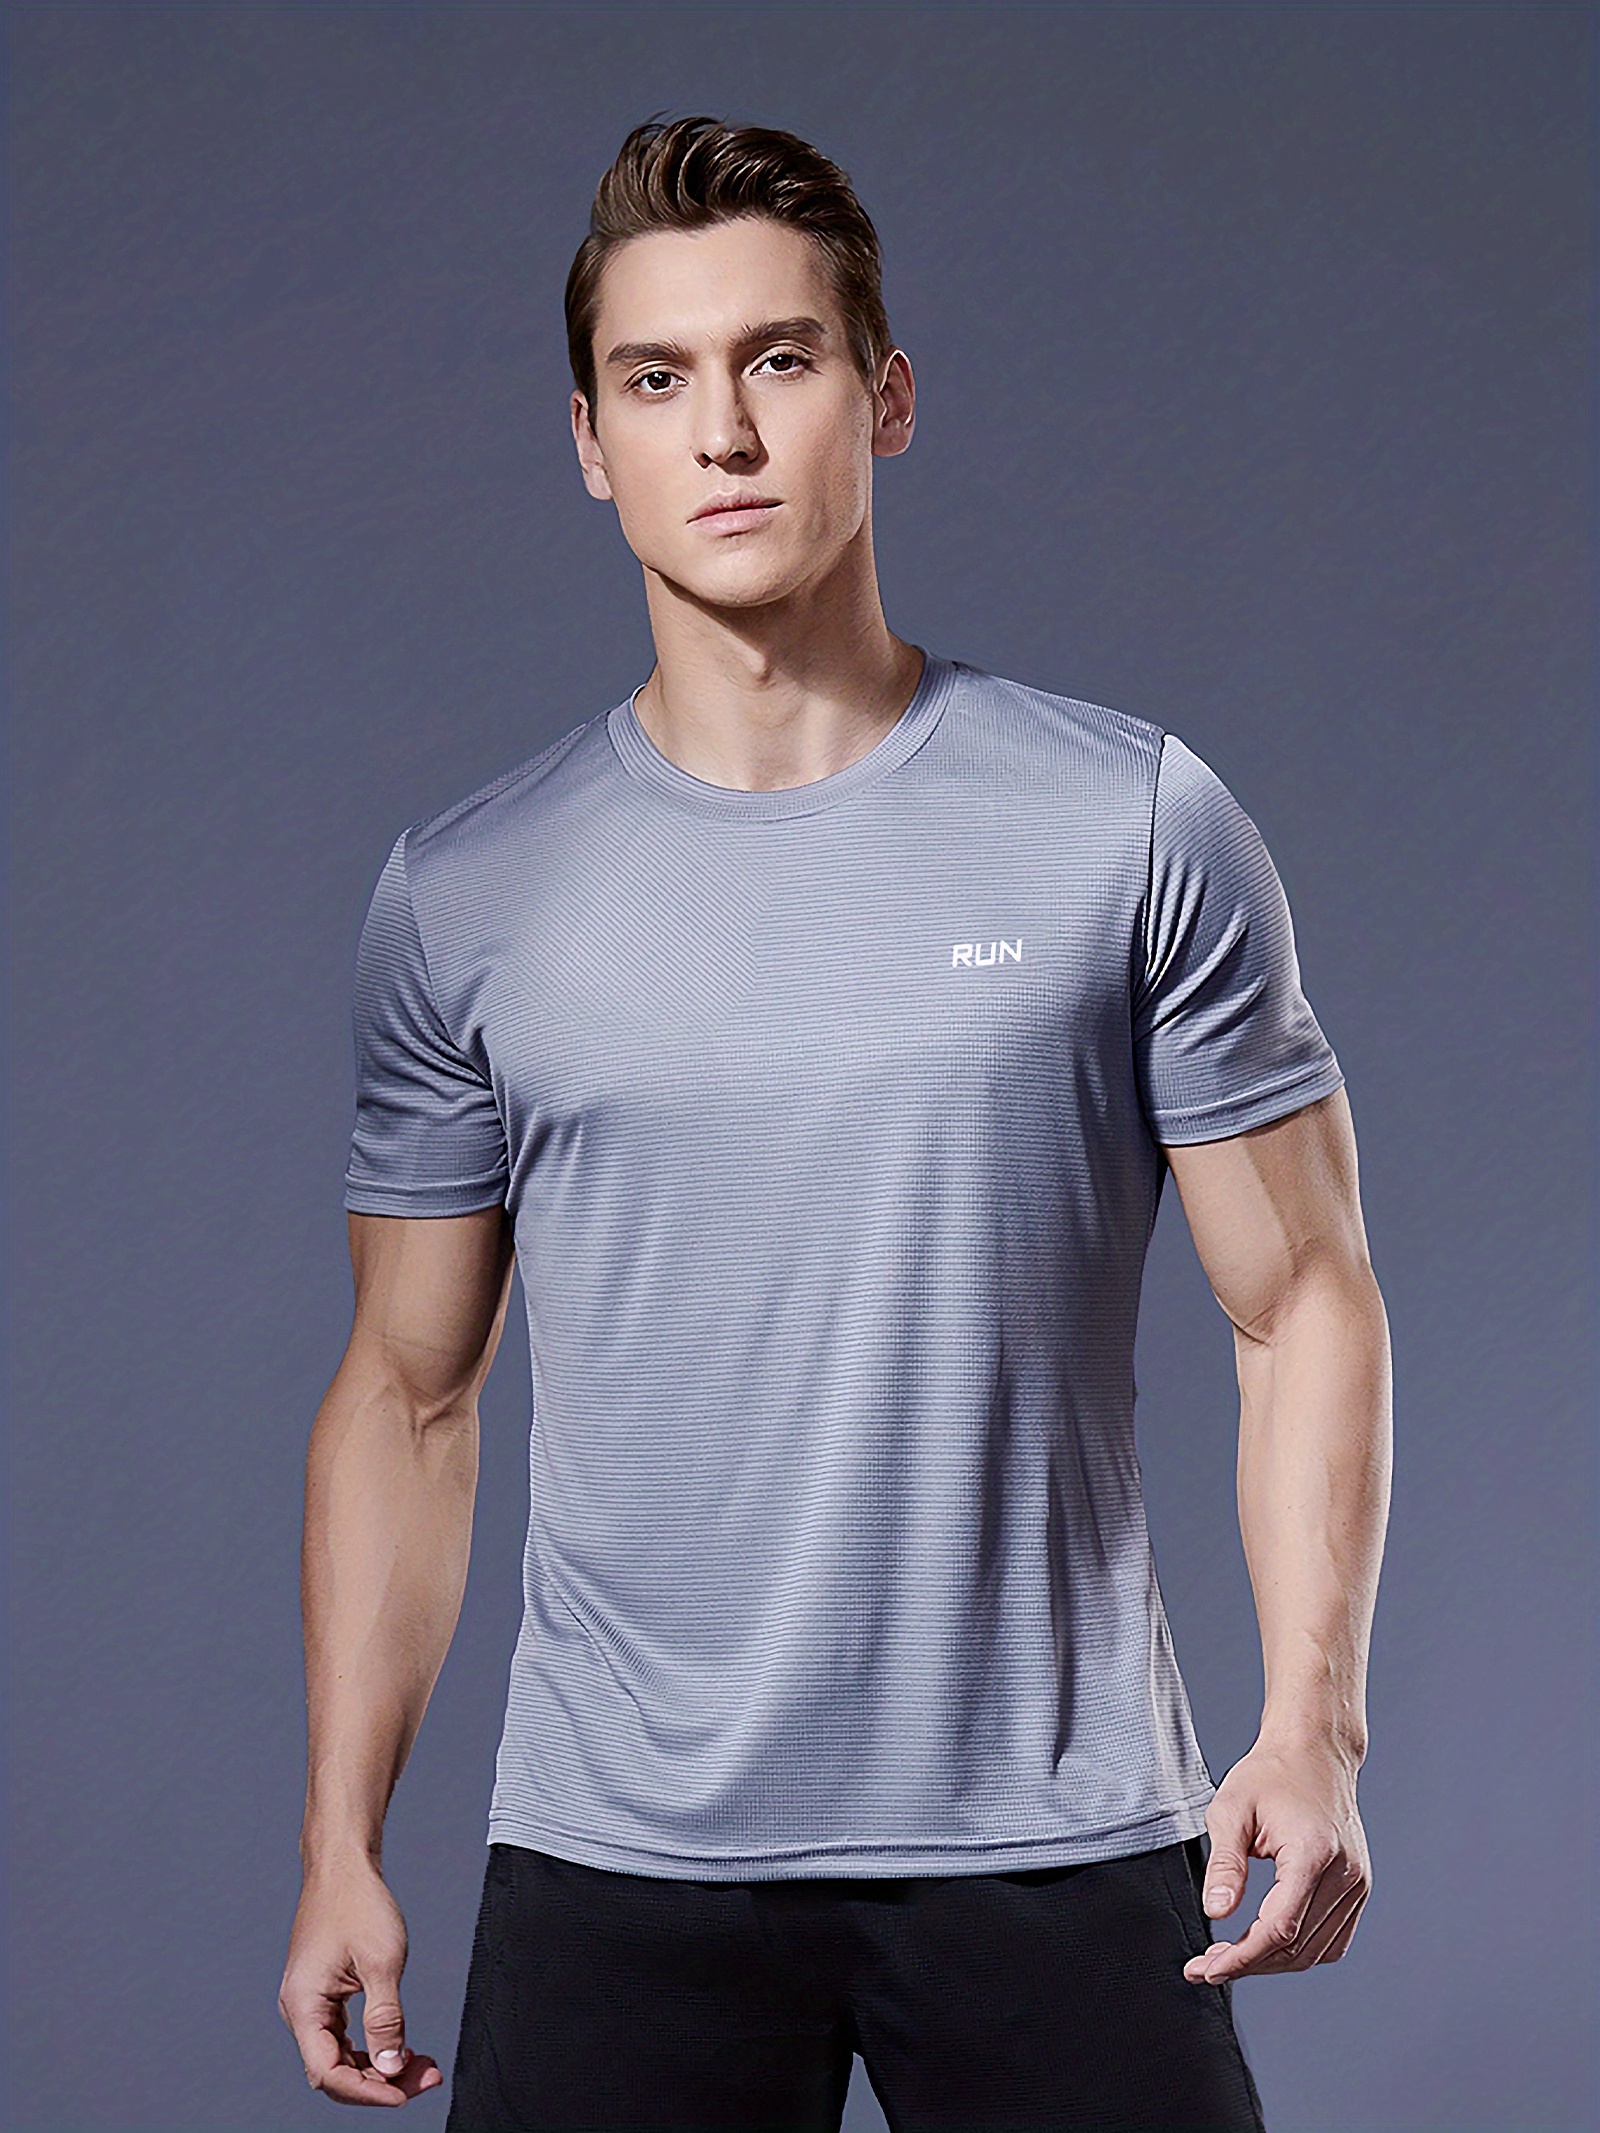 Pelliot tennis Shirt Sport T Shirt Men Quick Dry Running Shirt